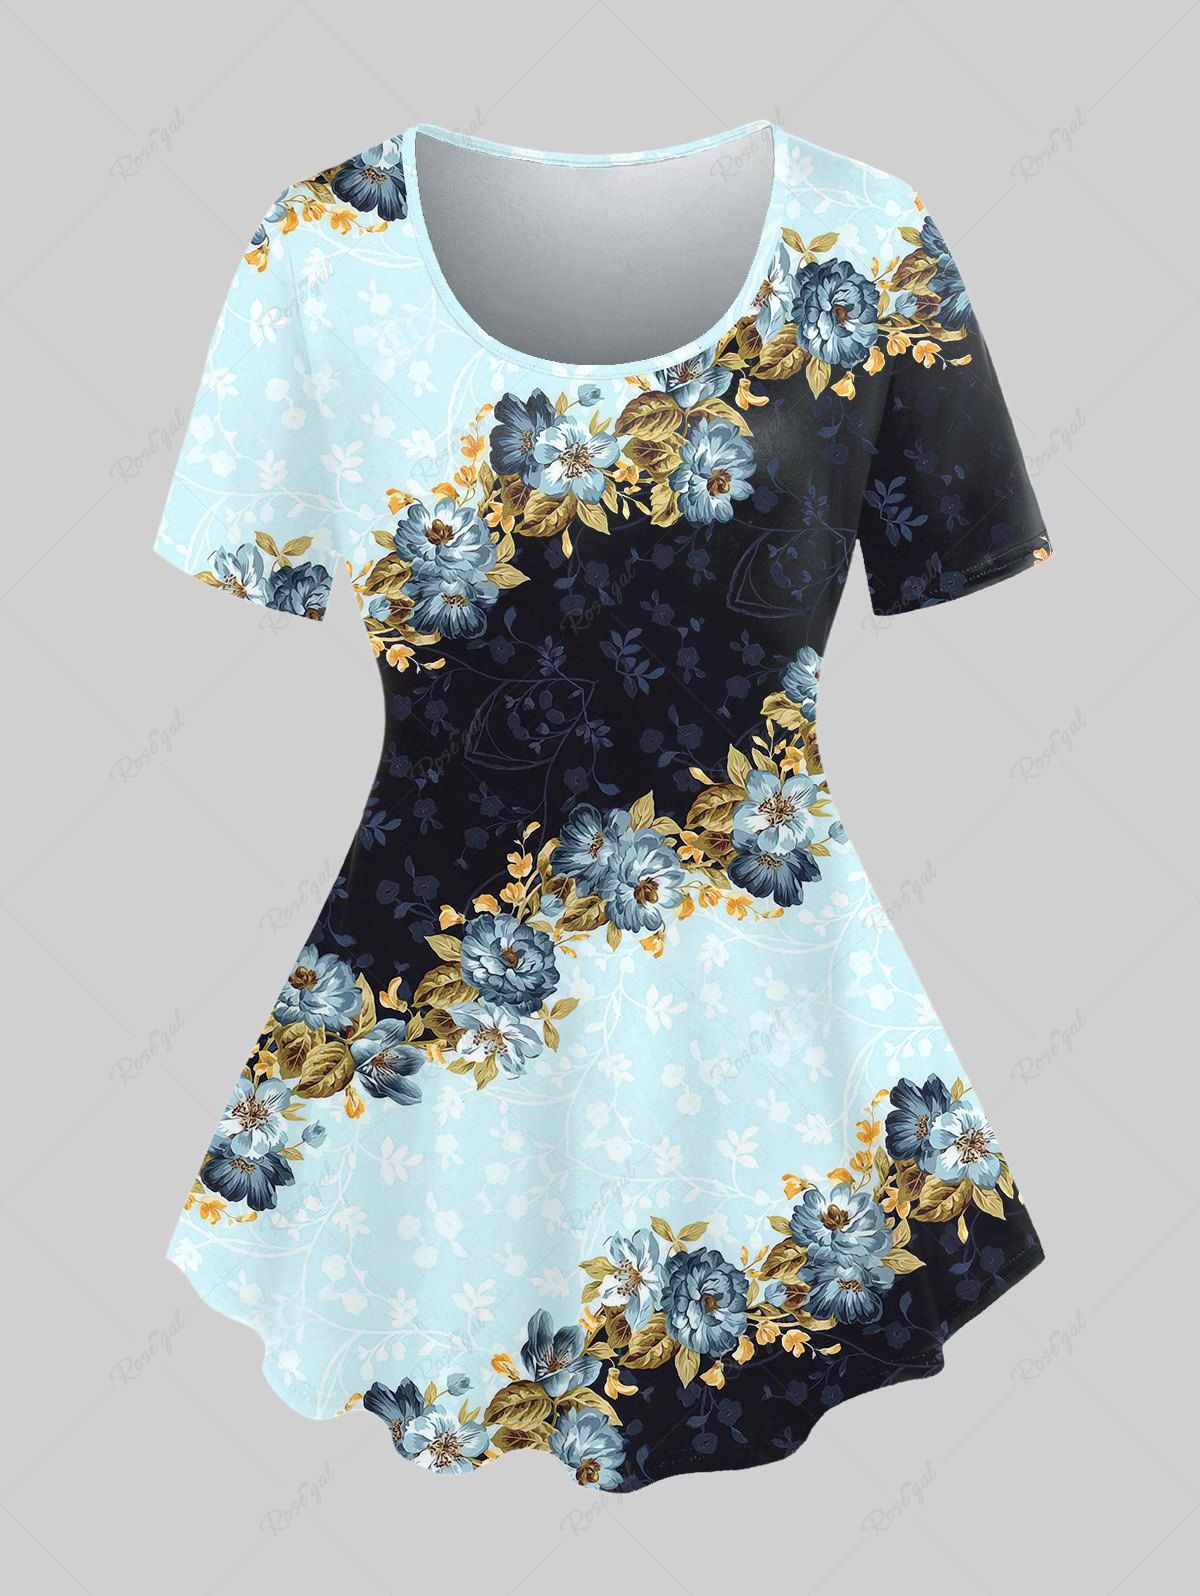 T-shirt Vintage Floral Imprimé de Grande Taille Bleu clair 1X | US 14-16